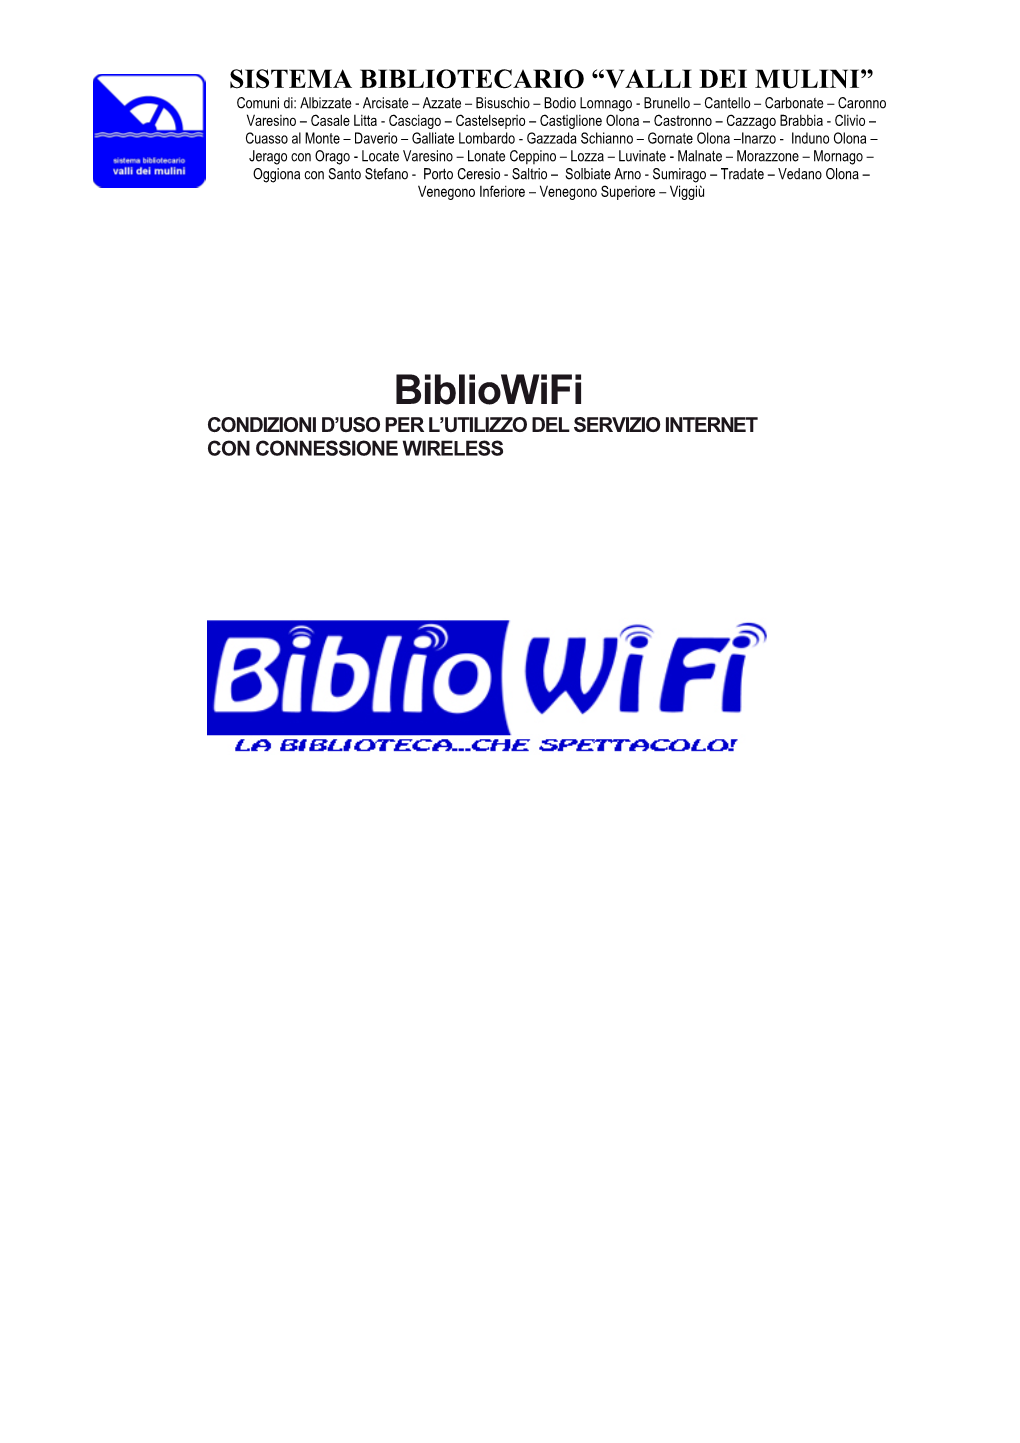 Condizioni Uso Bibliowifi 2014